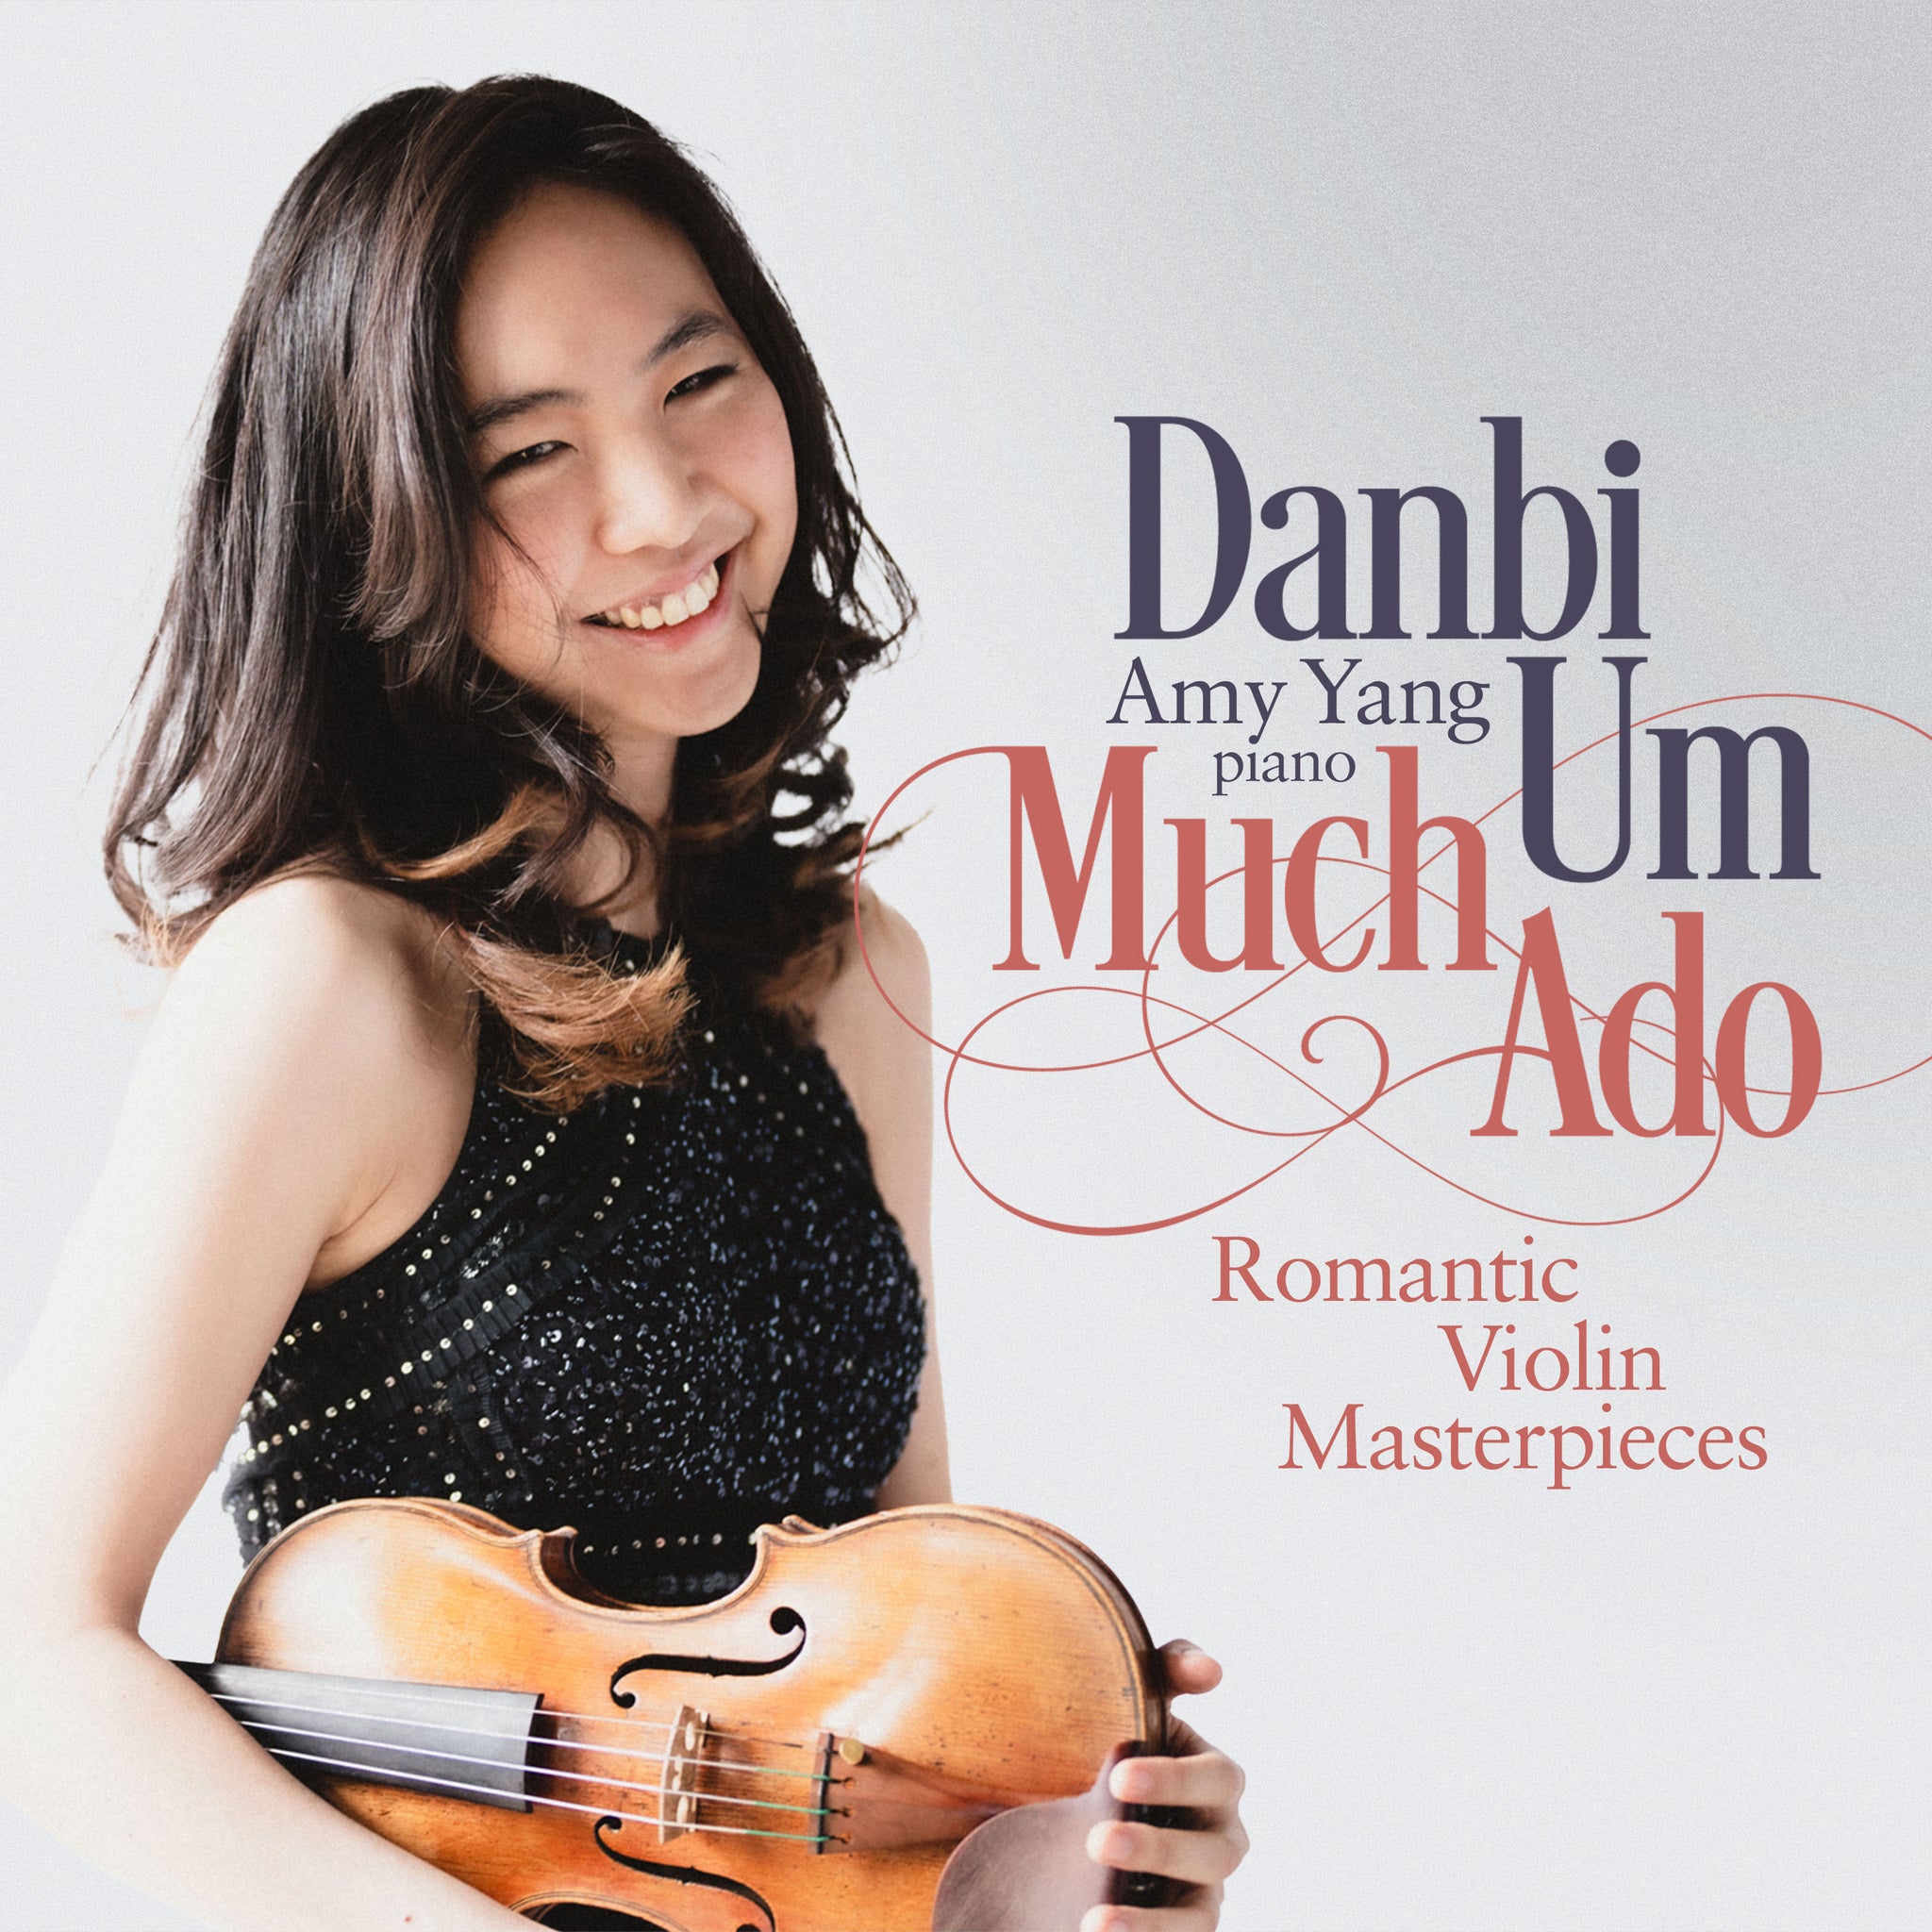 Much Ado - Romantic Violin Masterpieces / Danbi Um